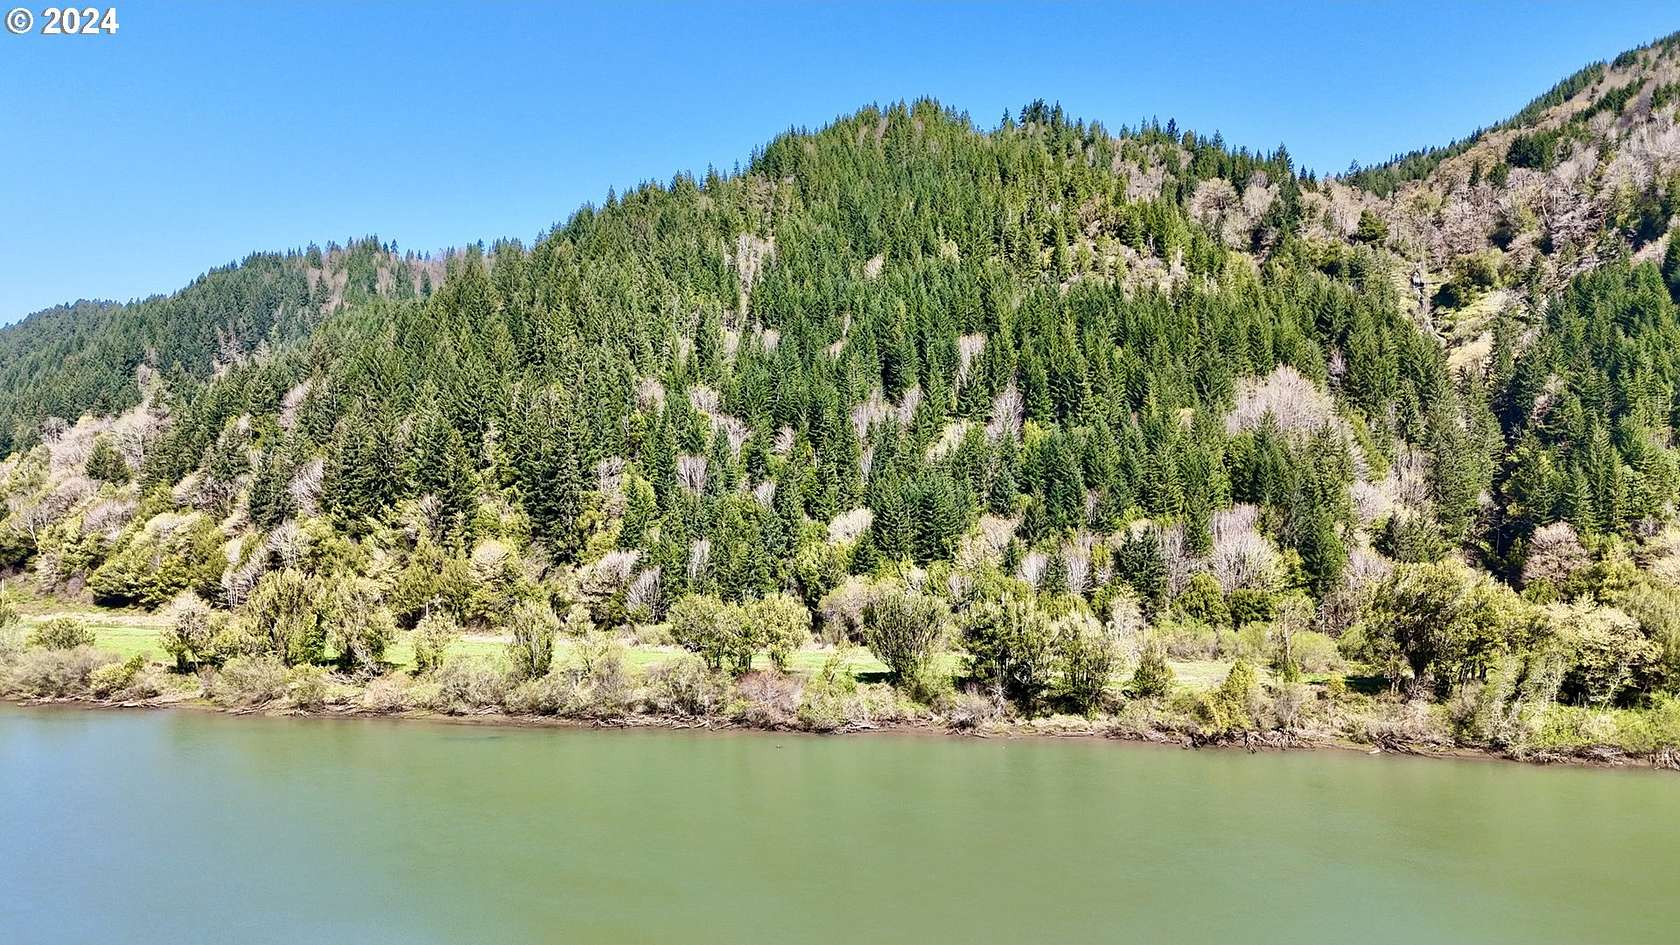 436 Acres of Land for Sale in Reedsport, Oregon